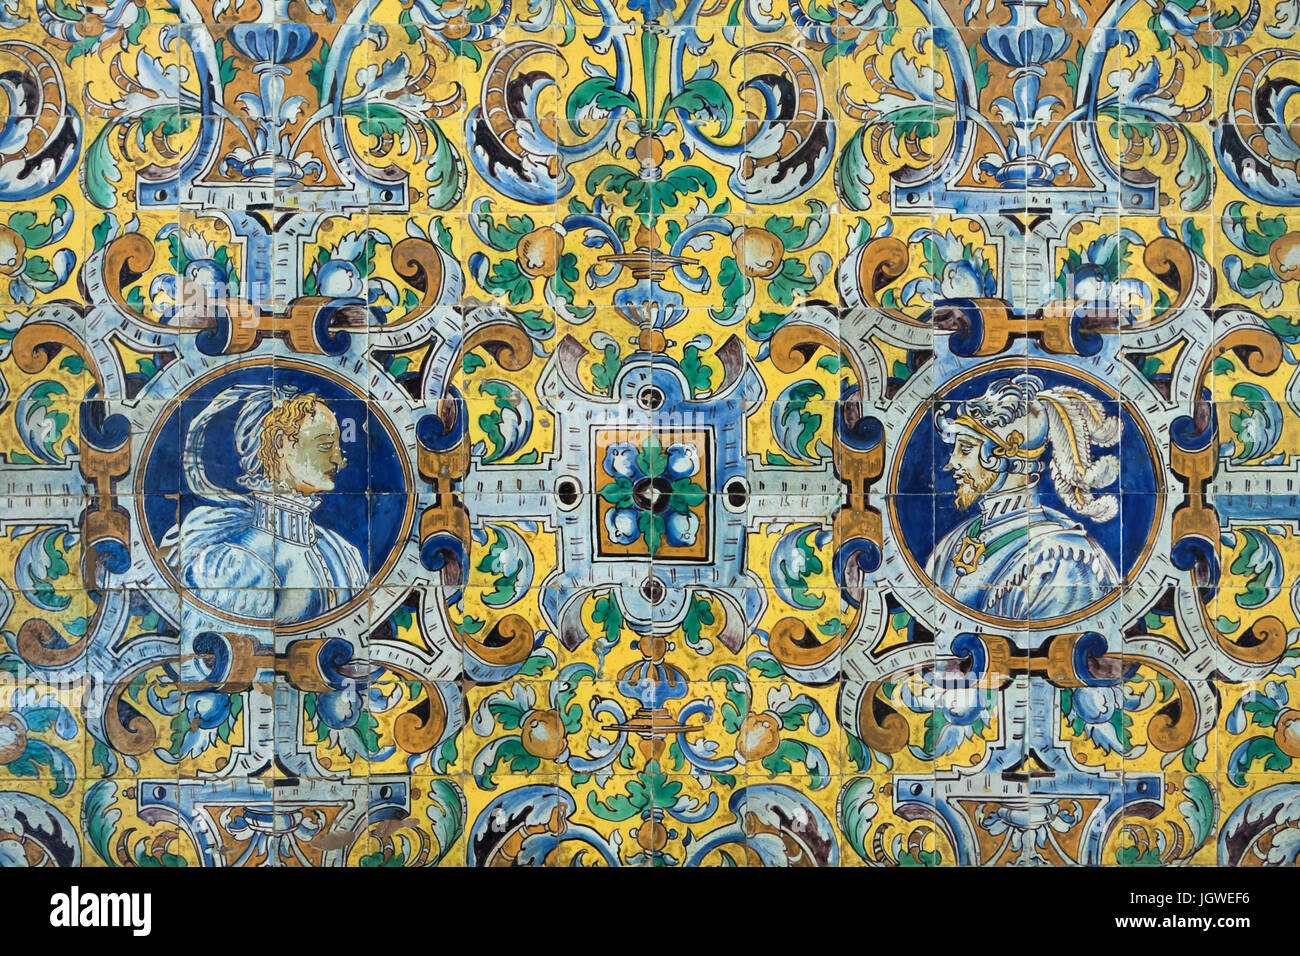 Saint empereur romain Charles V et son épouse Isabelle de Portugal décrite dans le carrelage peint polychrome Renaissance par Cristóbal de Augusta (1577) dans la Sala de las Fiestas (Celebration) dans le Palacio de Carlos V (Palais de Charles V) dans l'Alcázar de Séville à Séville, Andalousie, espagne. Banque D'Images